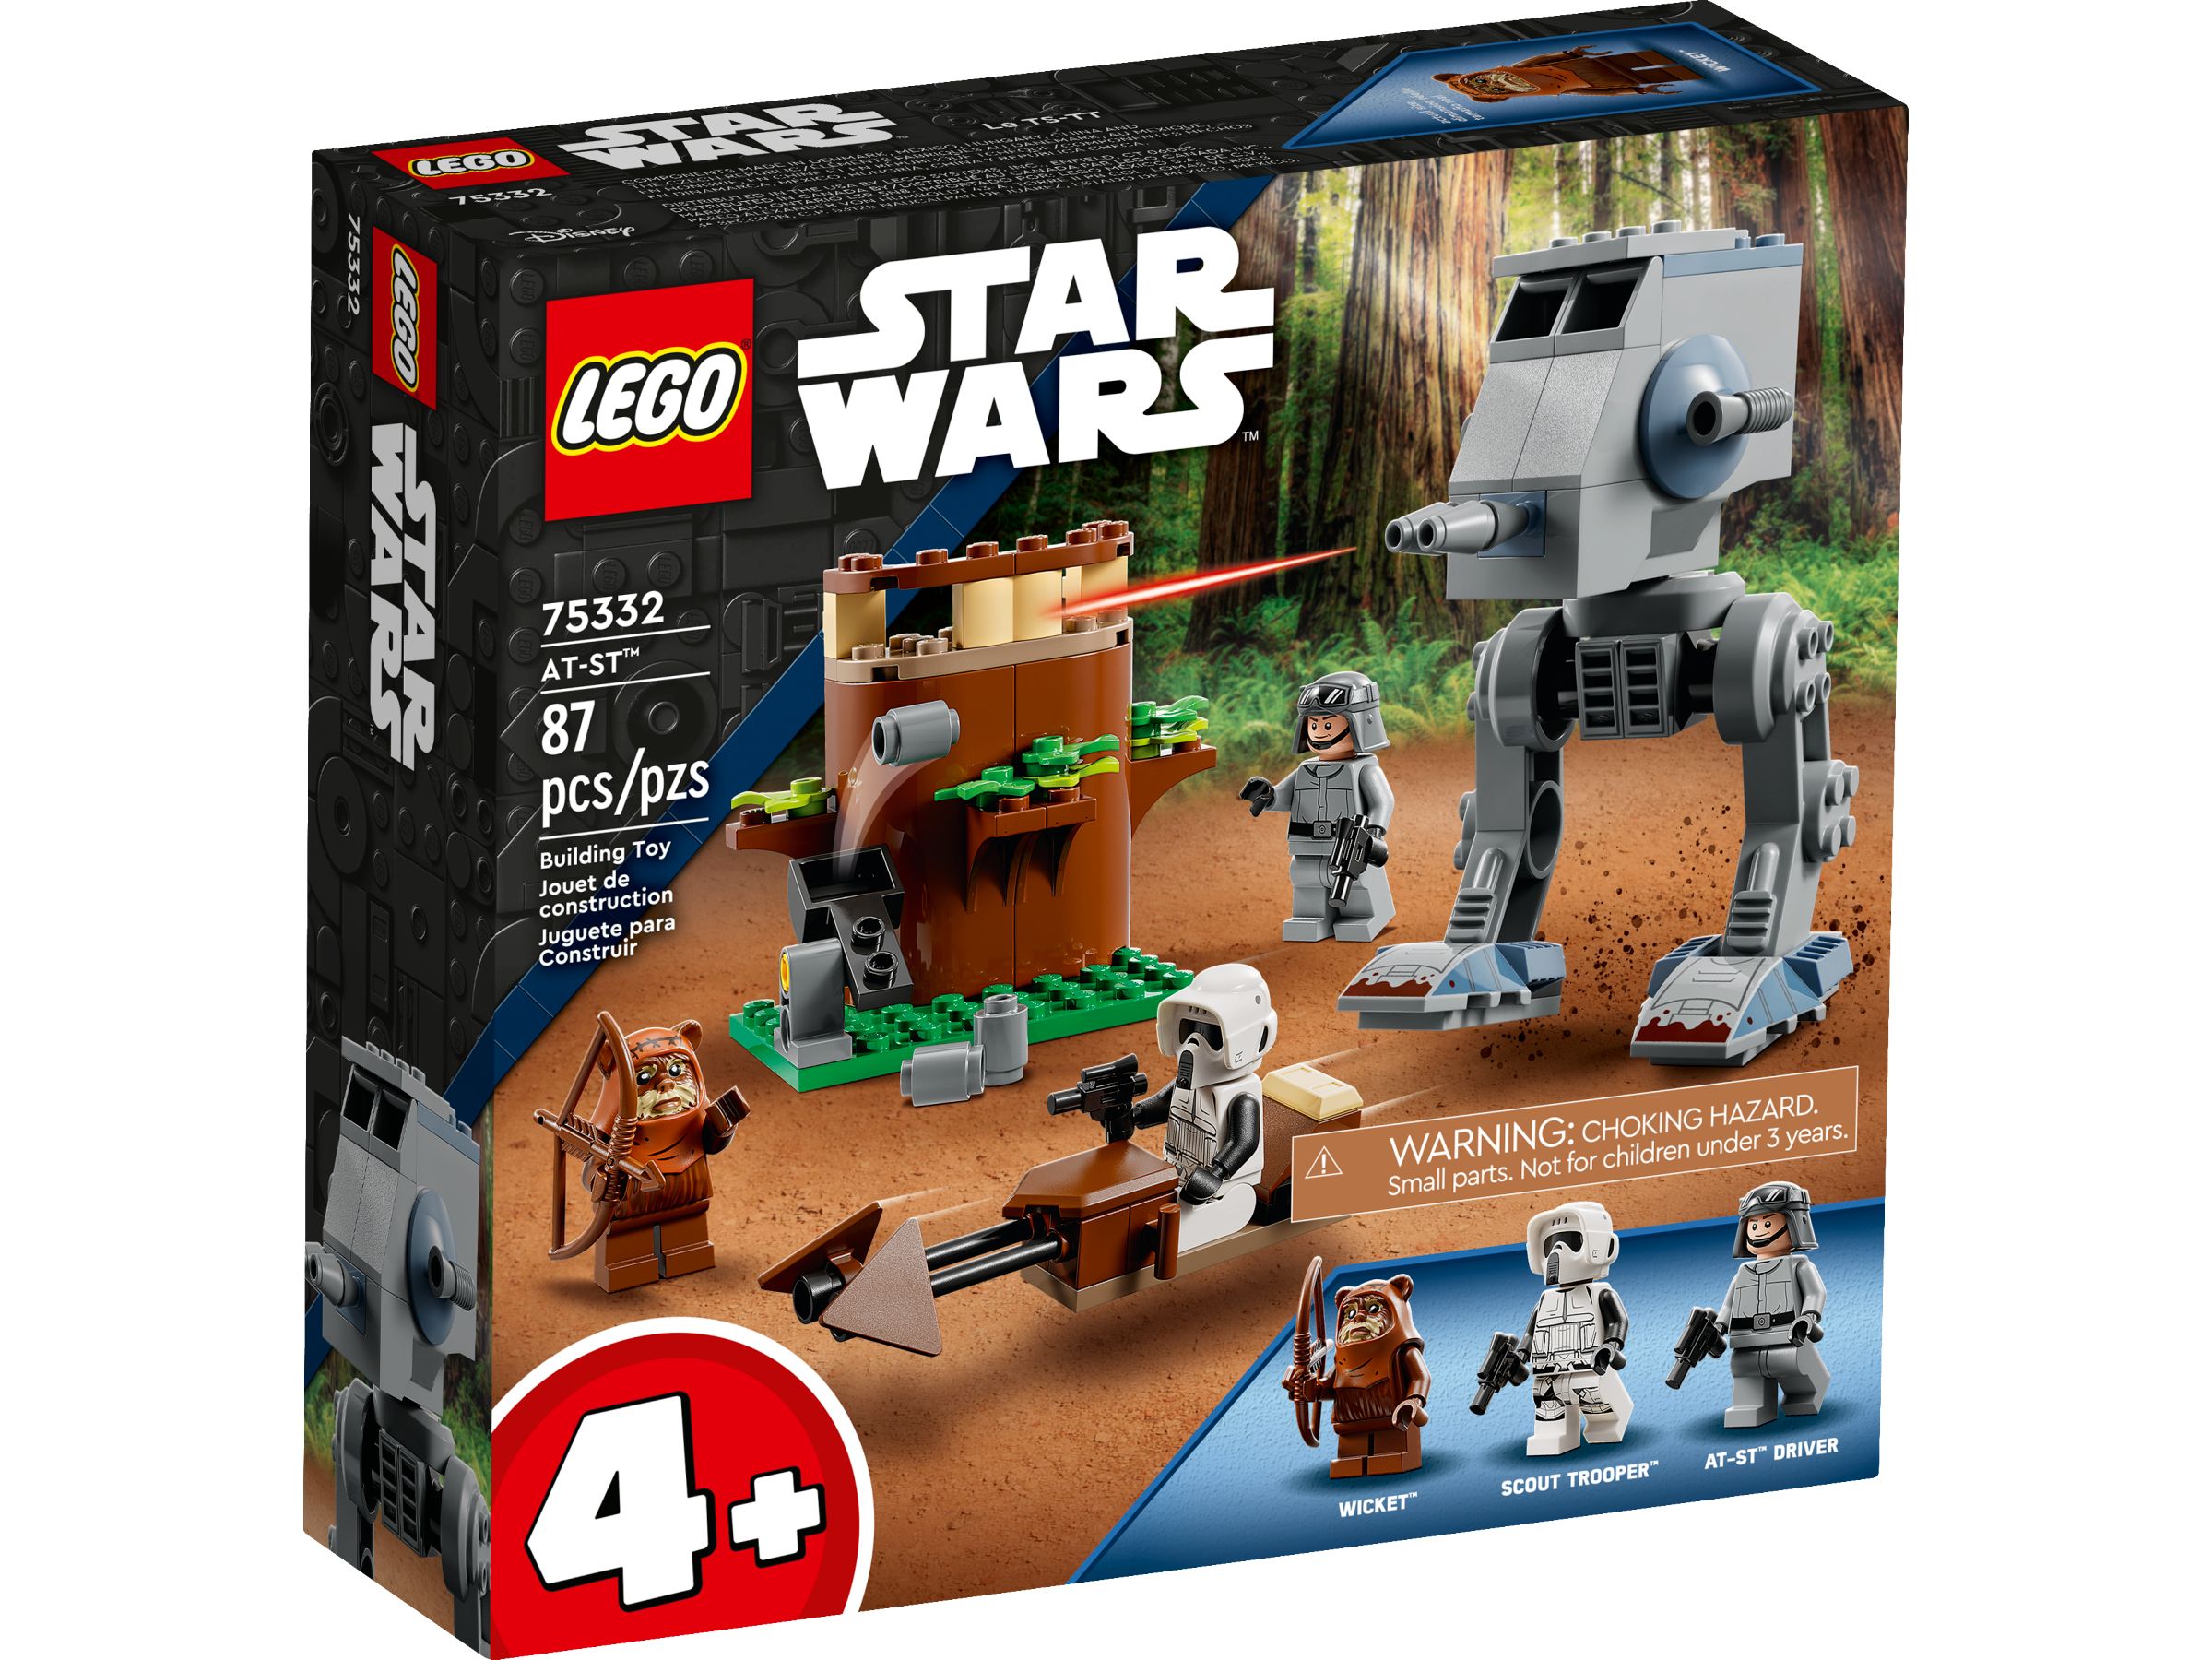 LEGO Star Wars 75332 AT-ST™ LEGO_75332_alt1.jpg